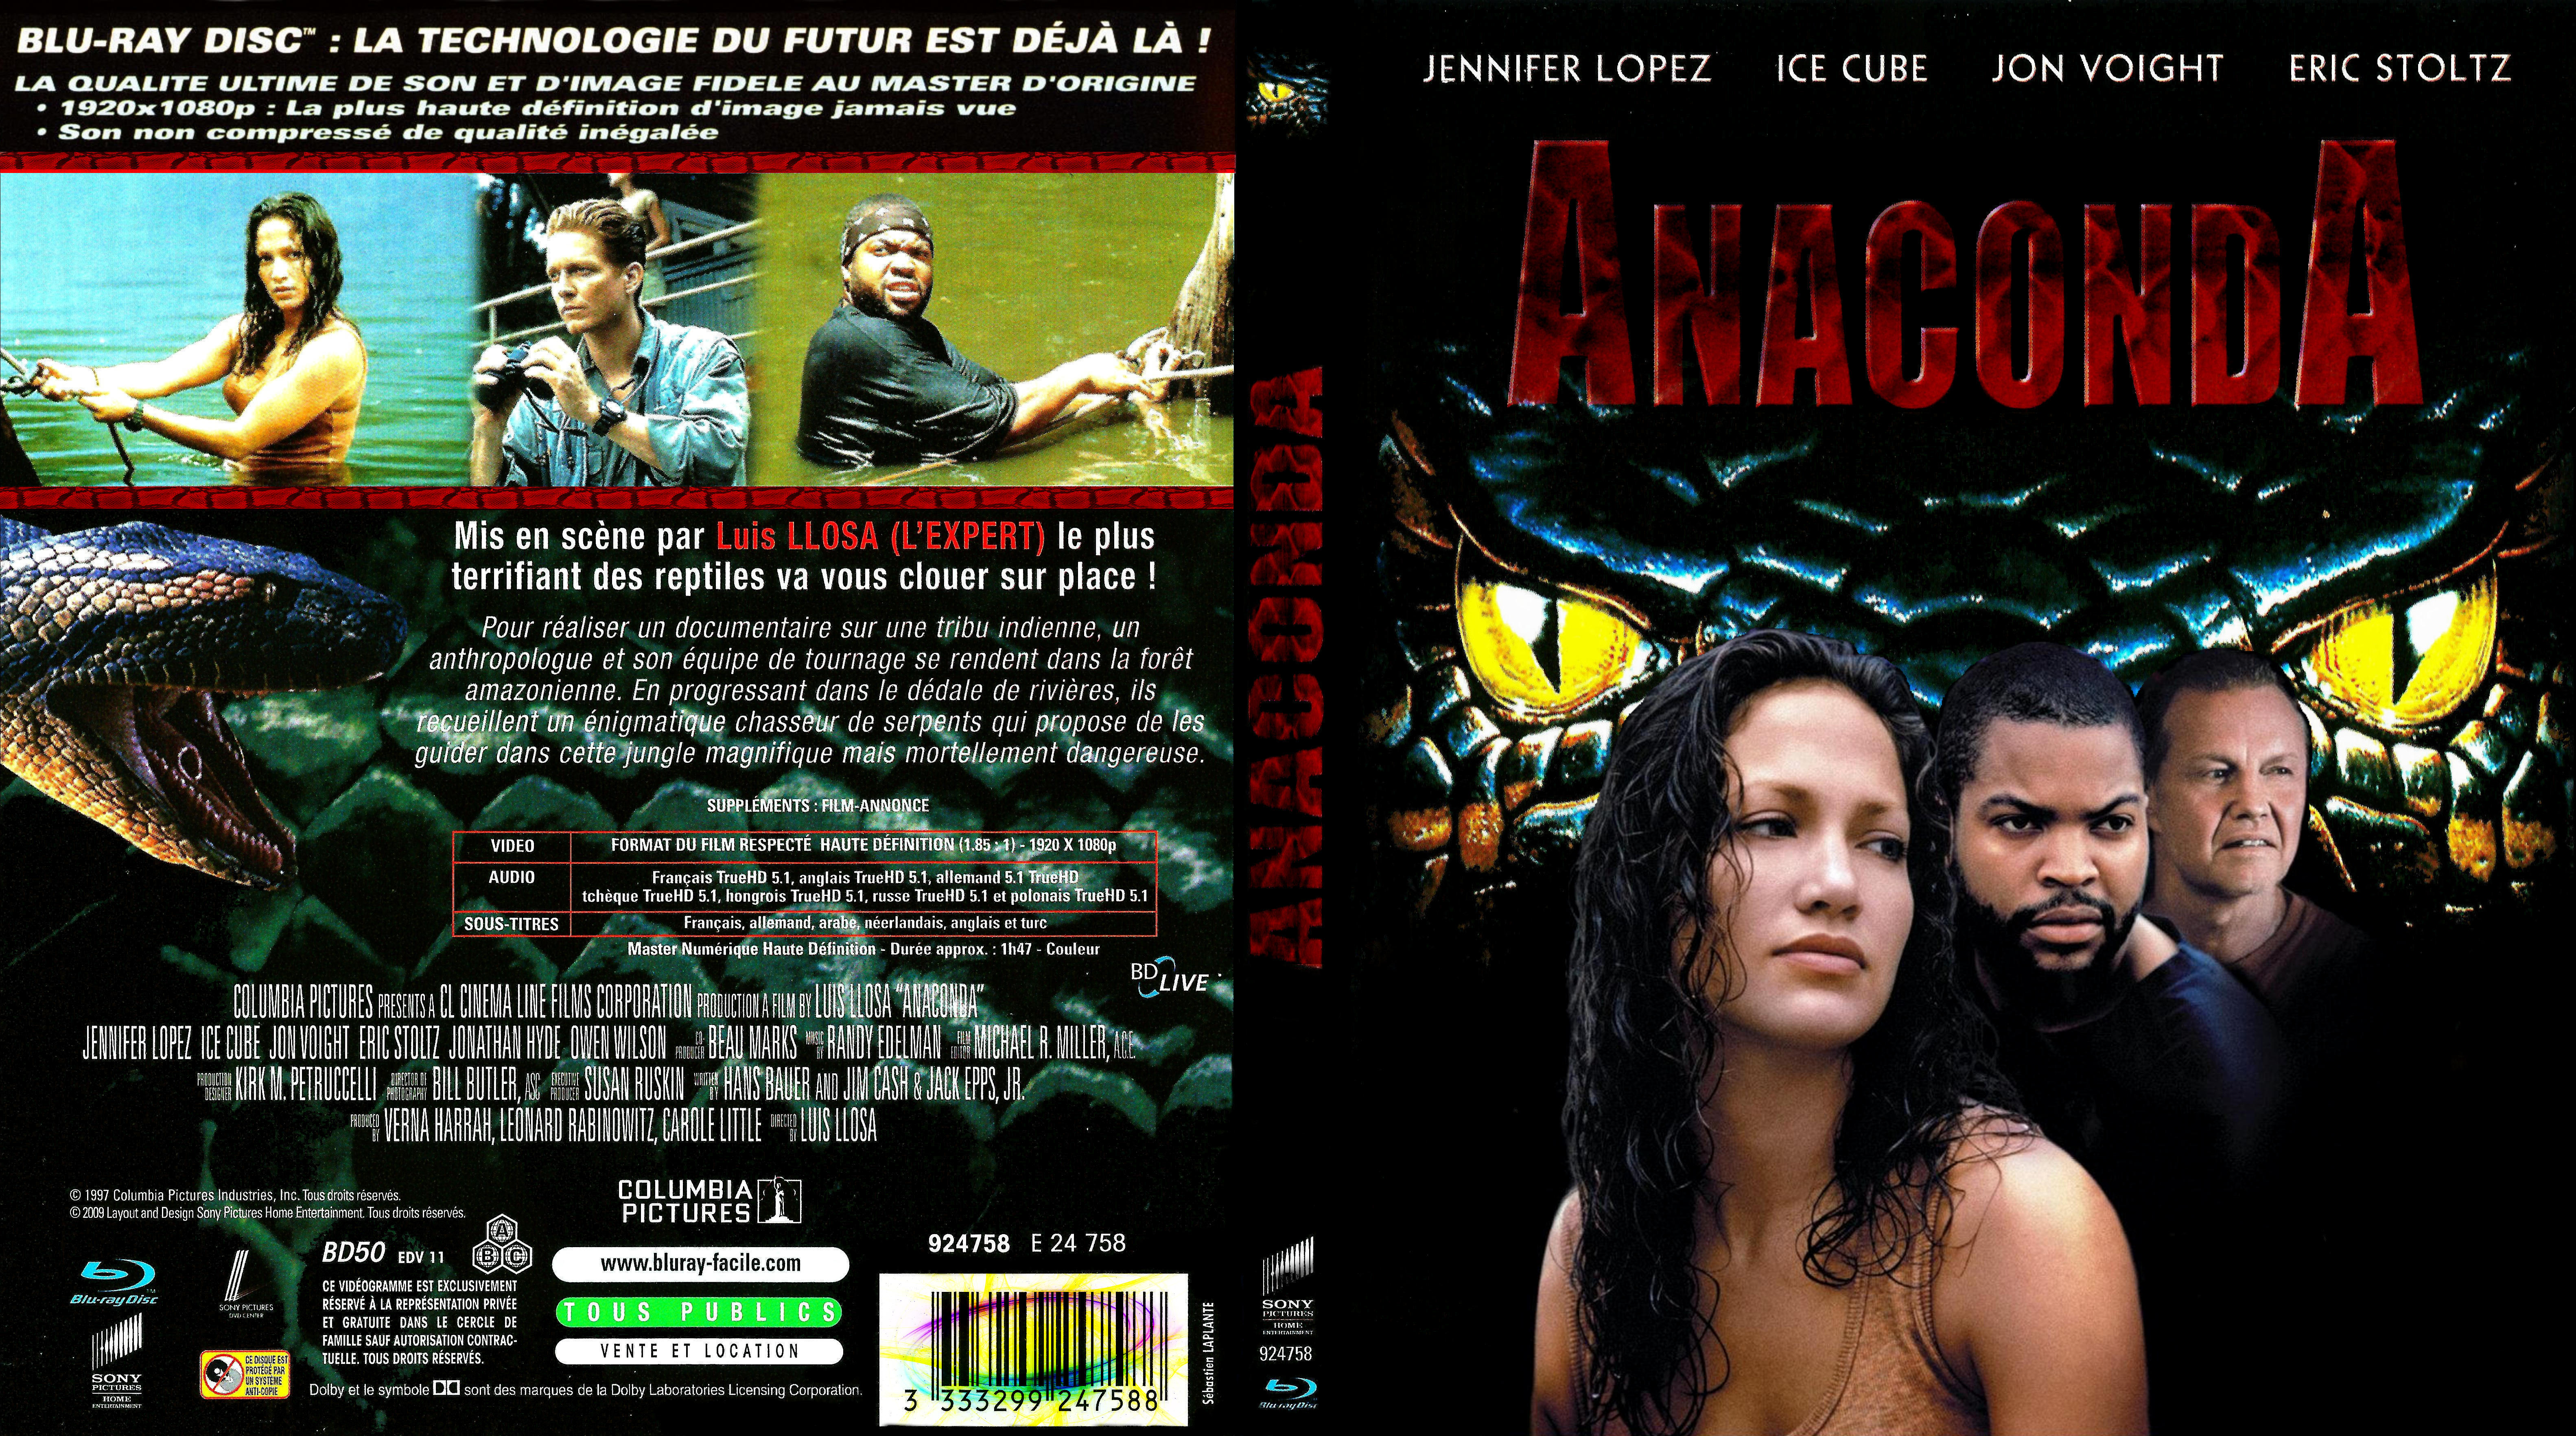 Анаконда мвд. Анаконда 1-2 Blu-ray. Анаконда 1997 Постер. Анаконда 1997 DVD Cover.